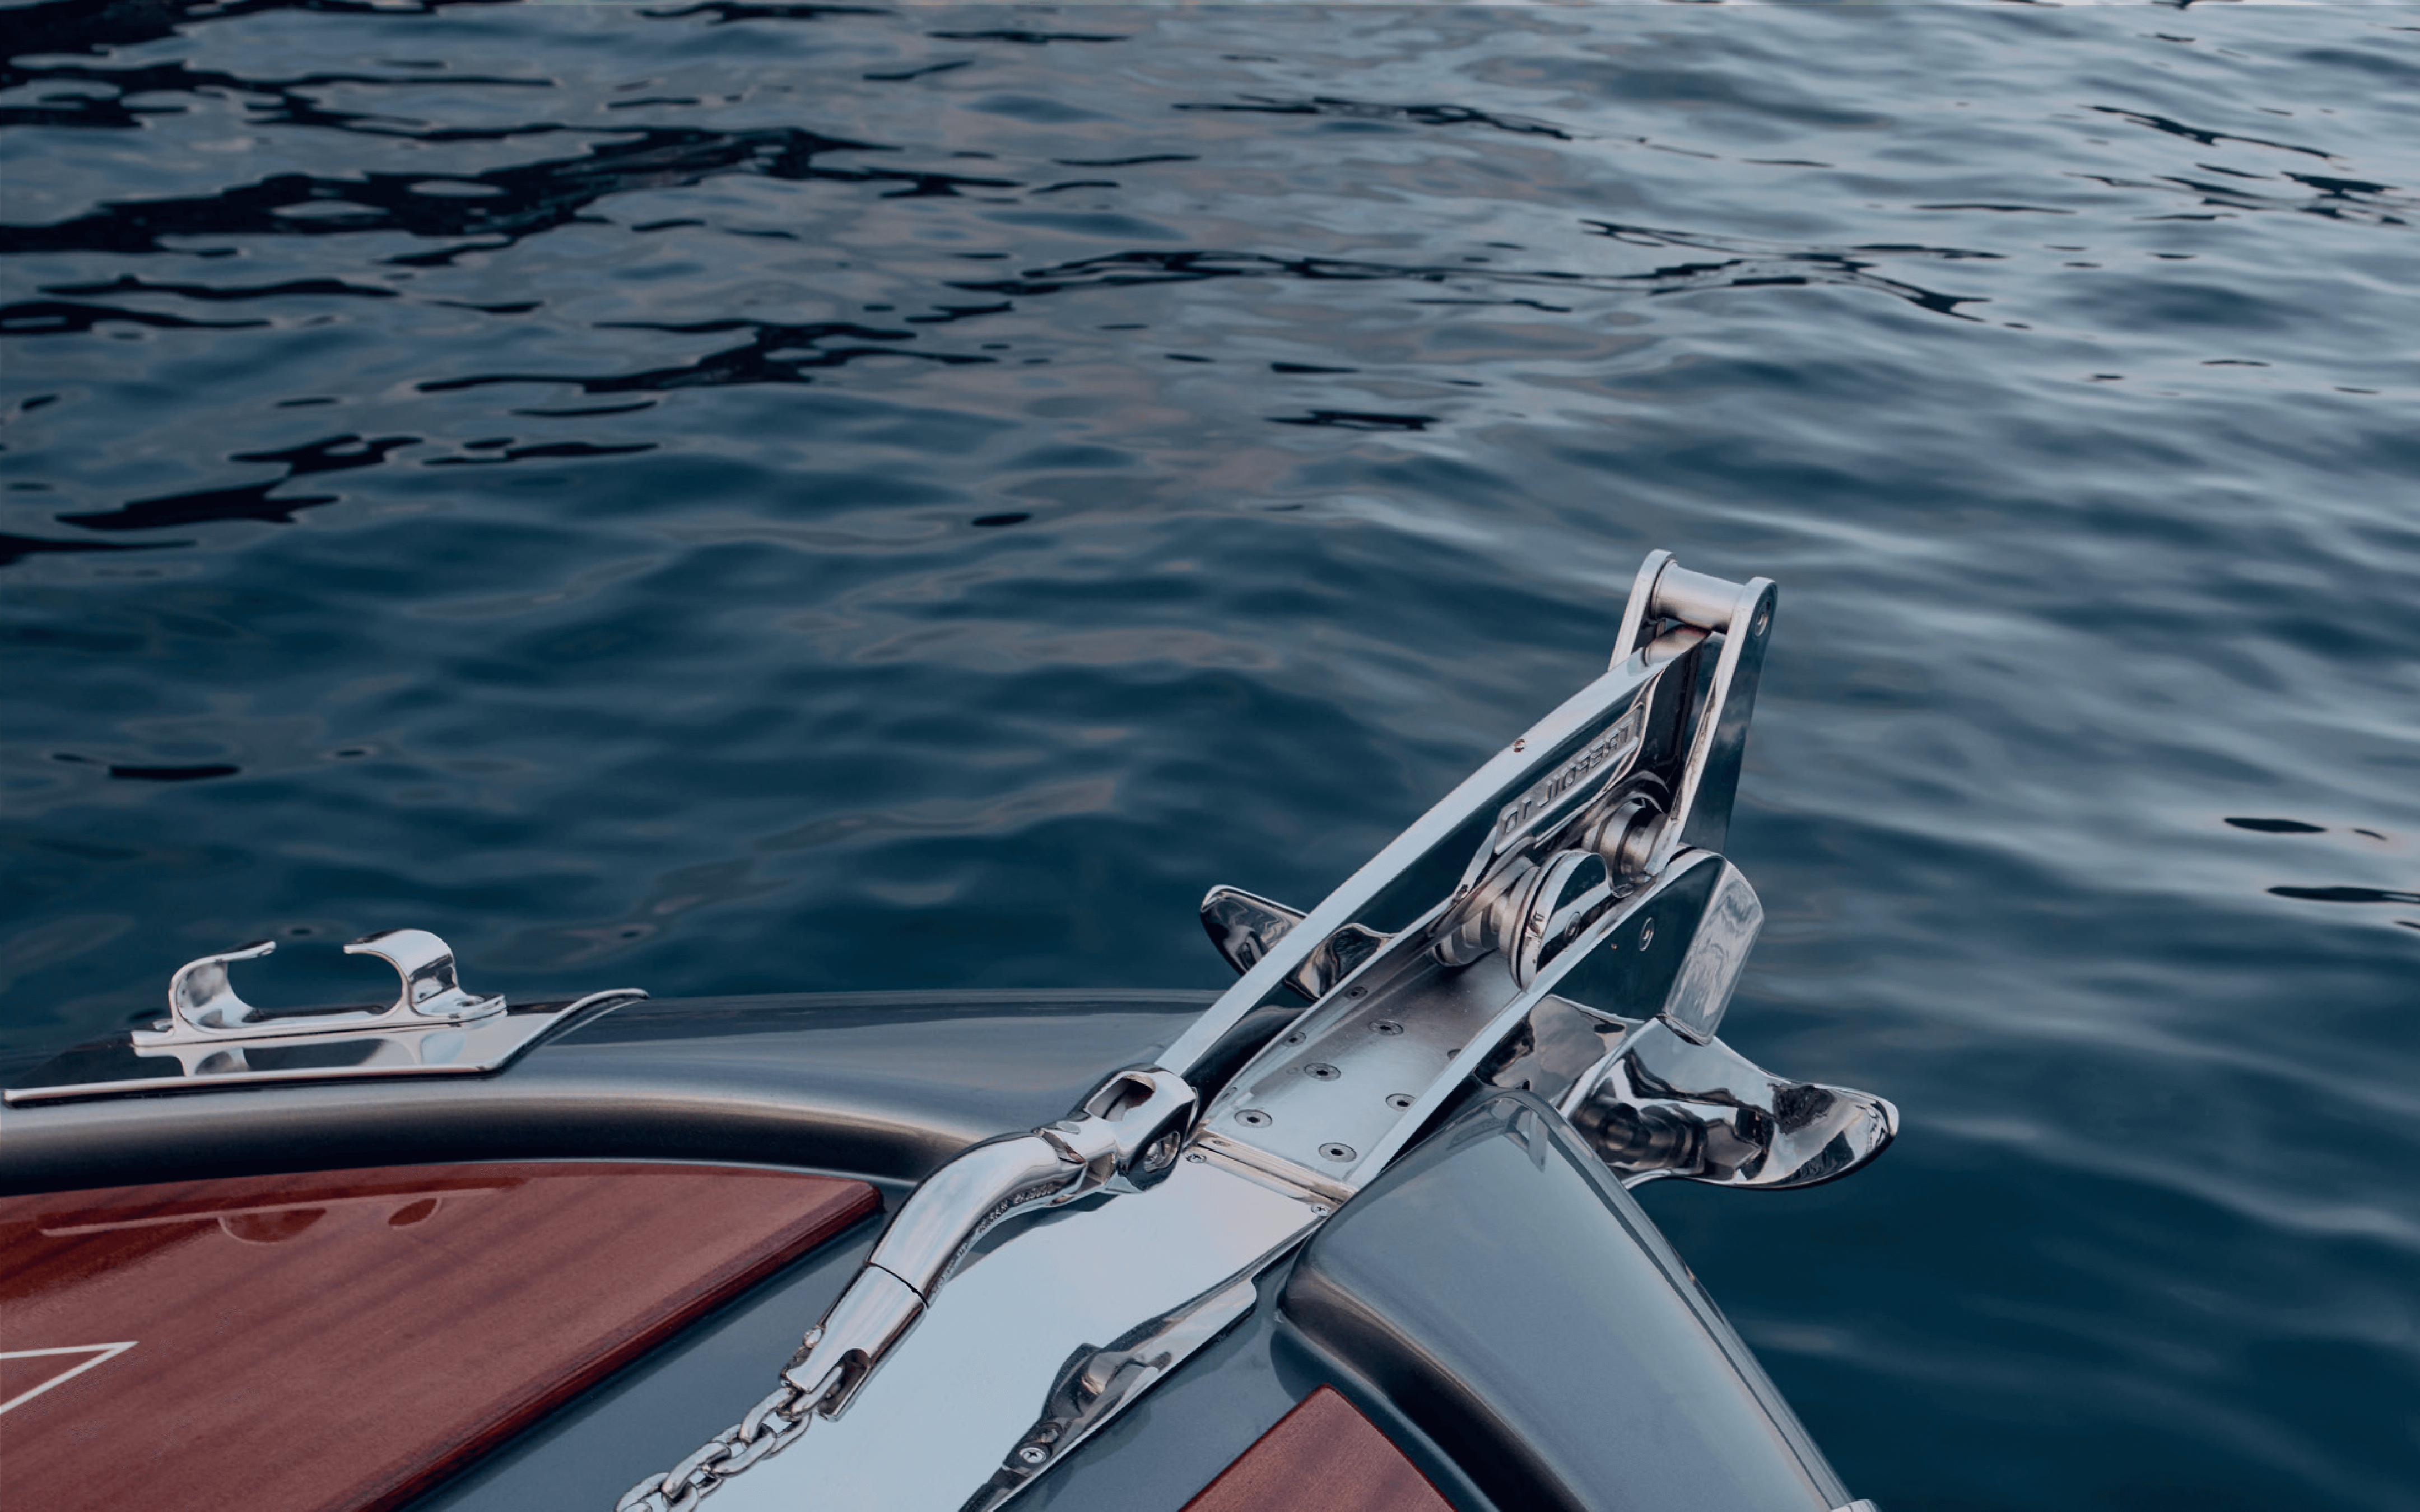 barche yacht portofino